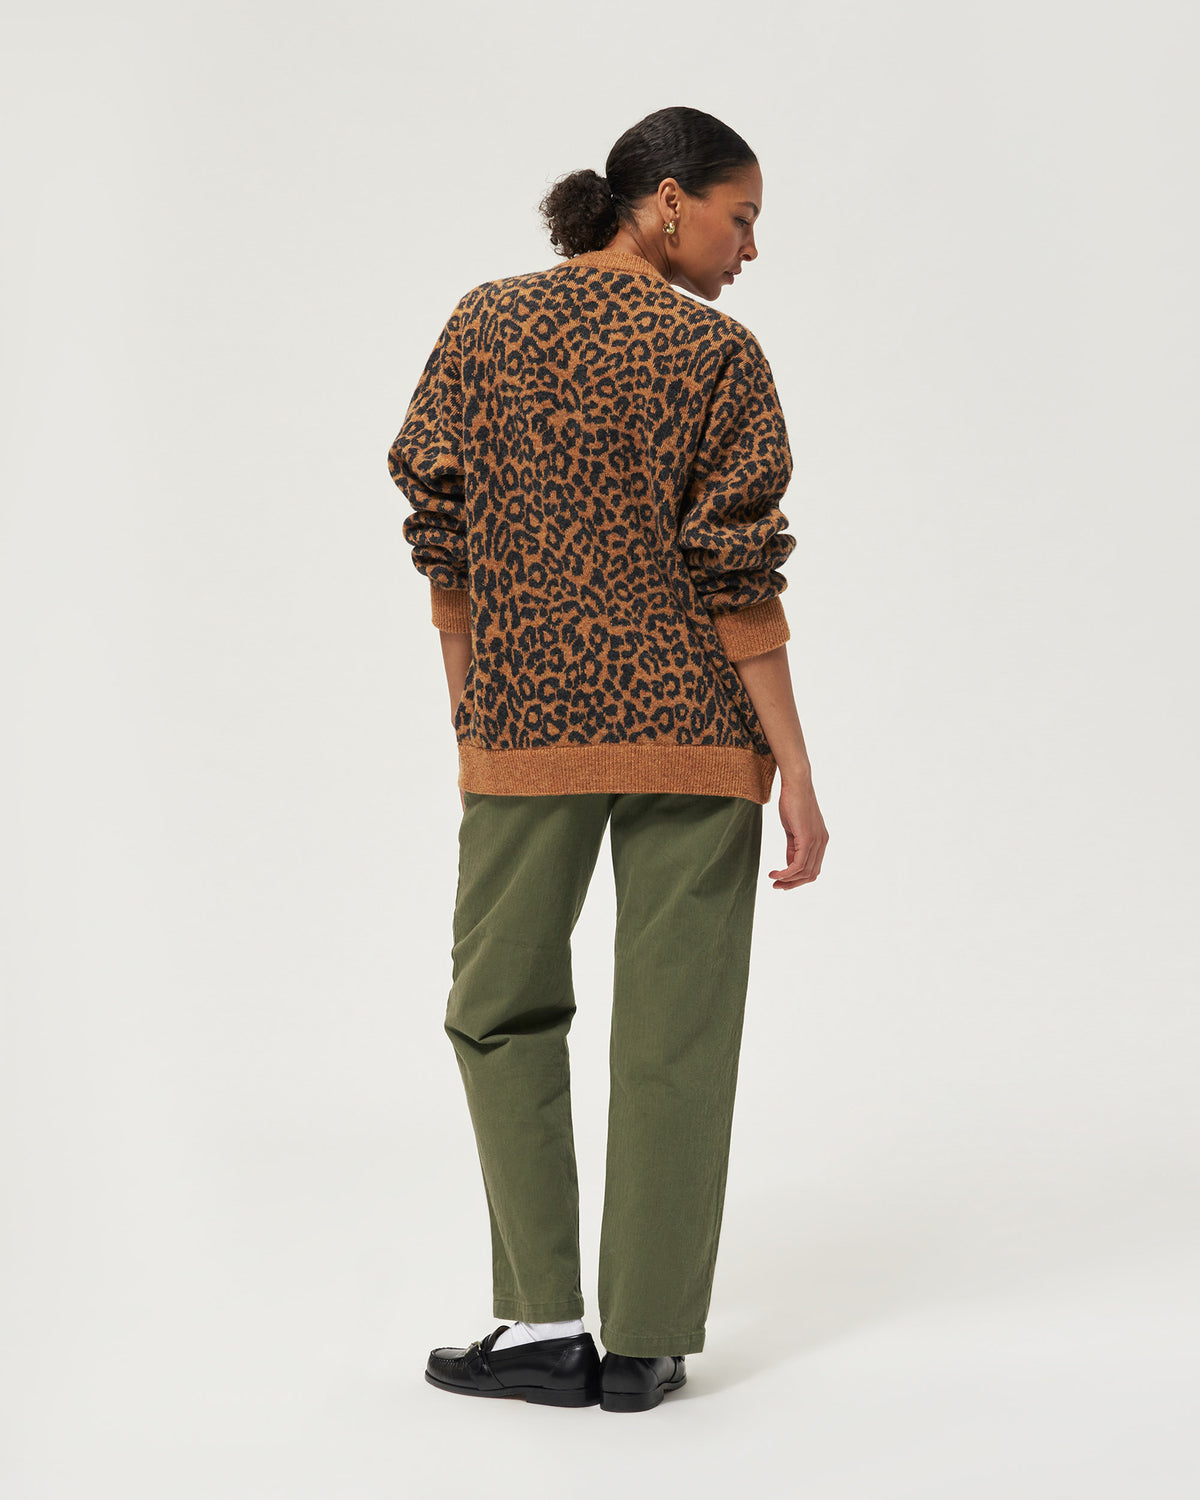 Leopard Cardigan Sweater